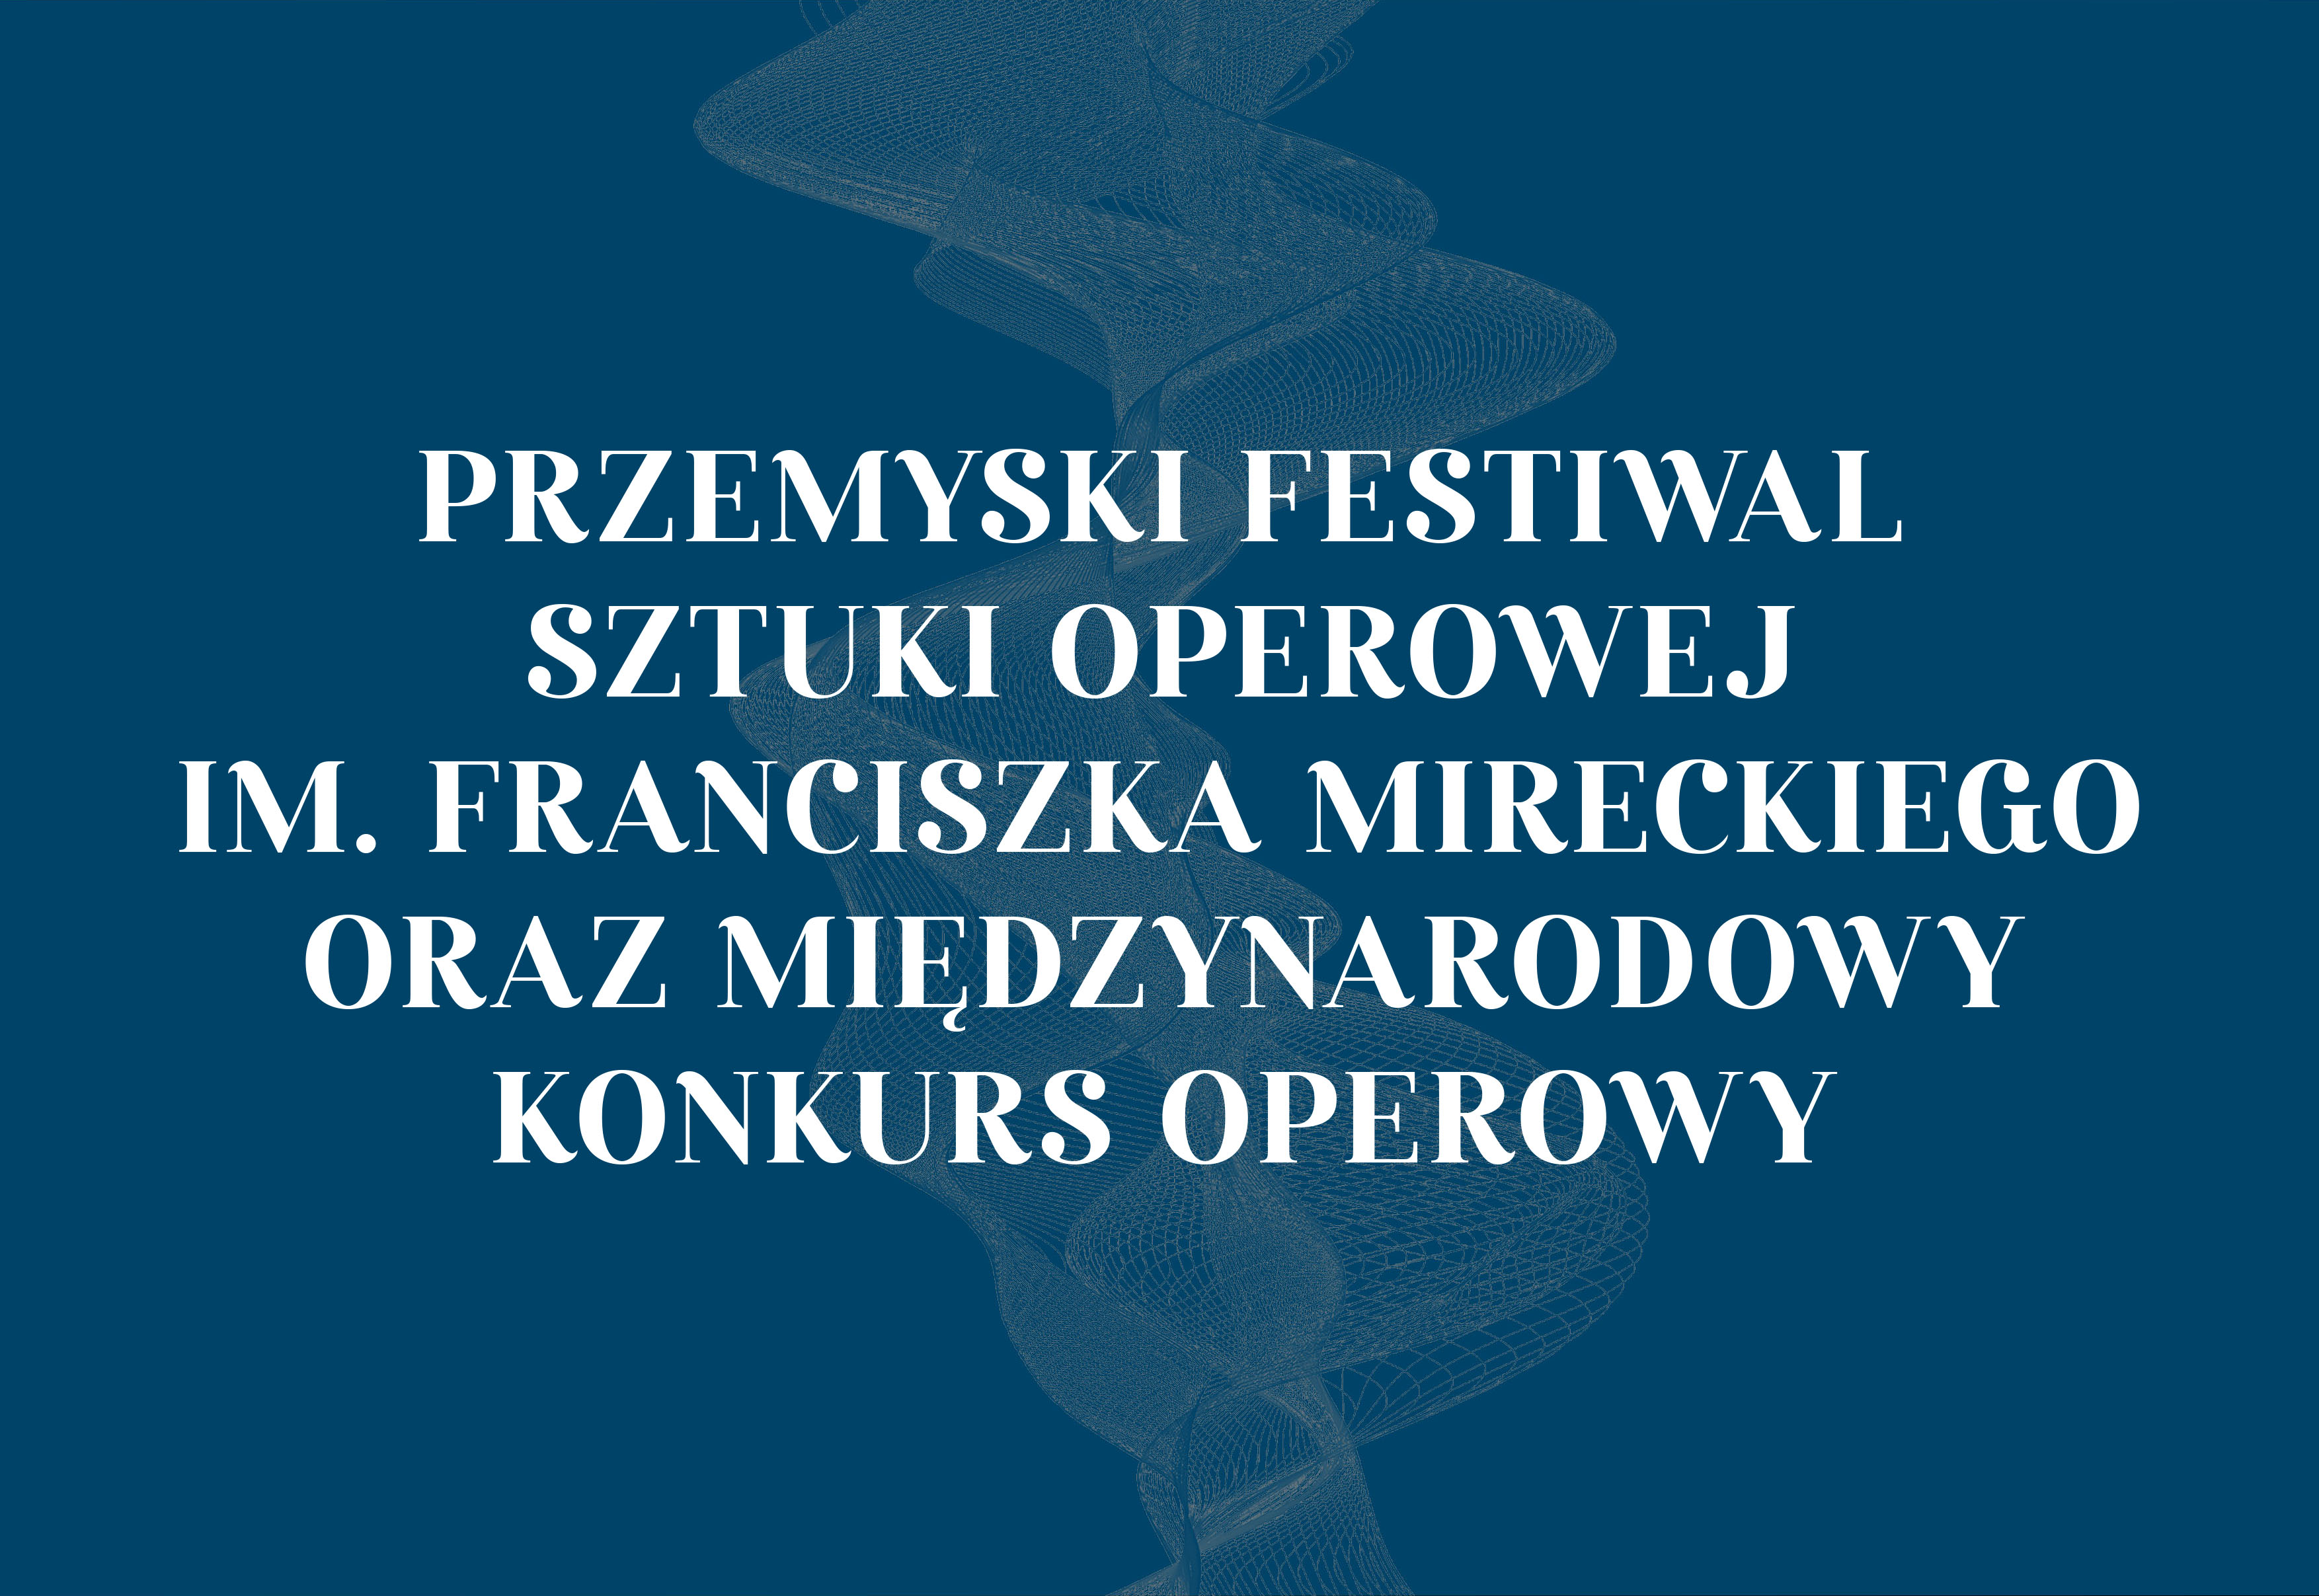 Przemyski festiwal sztuki operowej